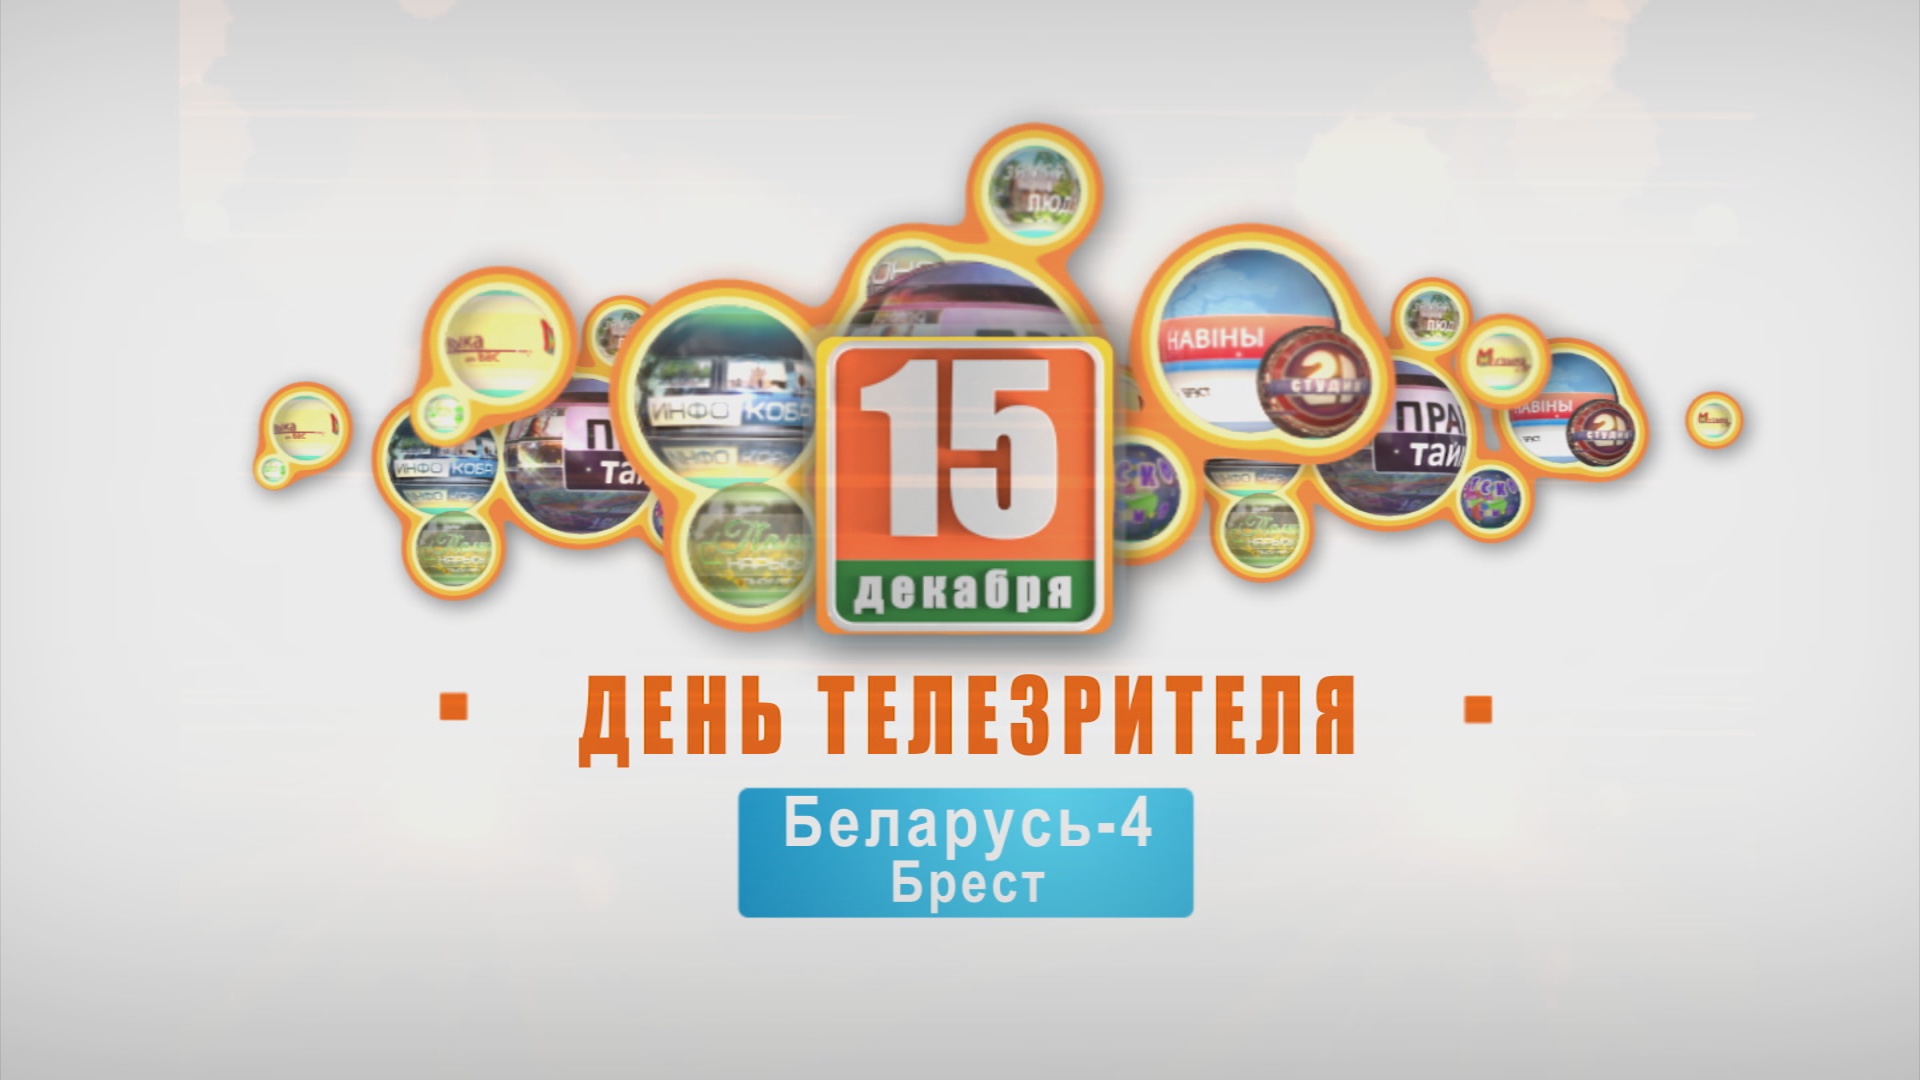 Телемарафон "День телезрителя". 3 года. 15-12-18 (часть 2)